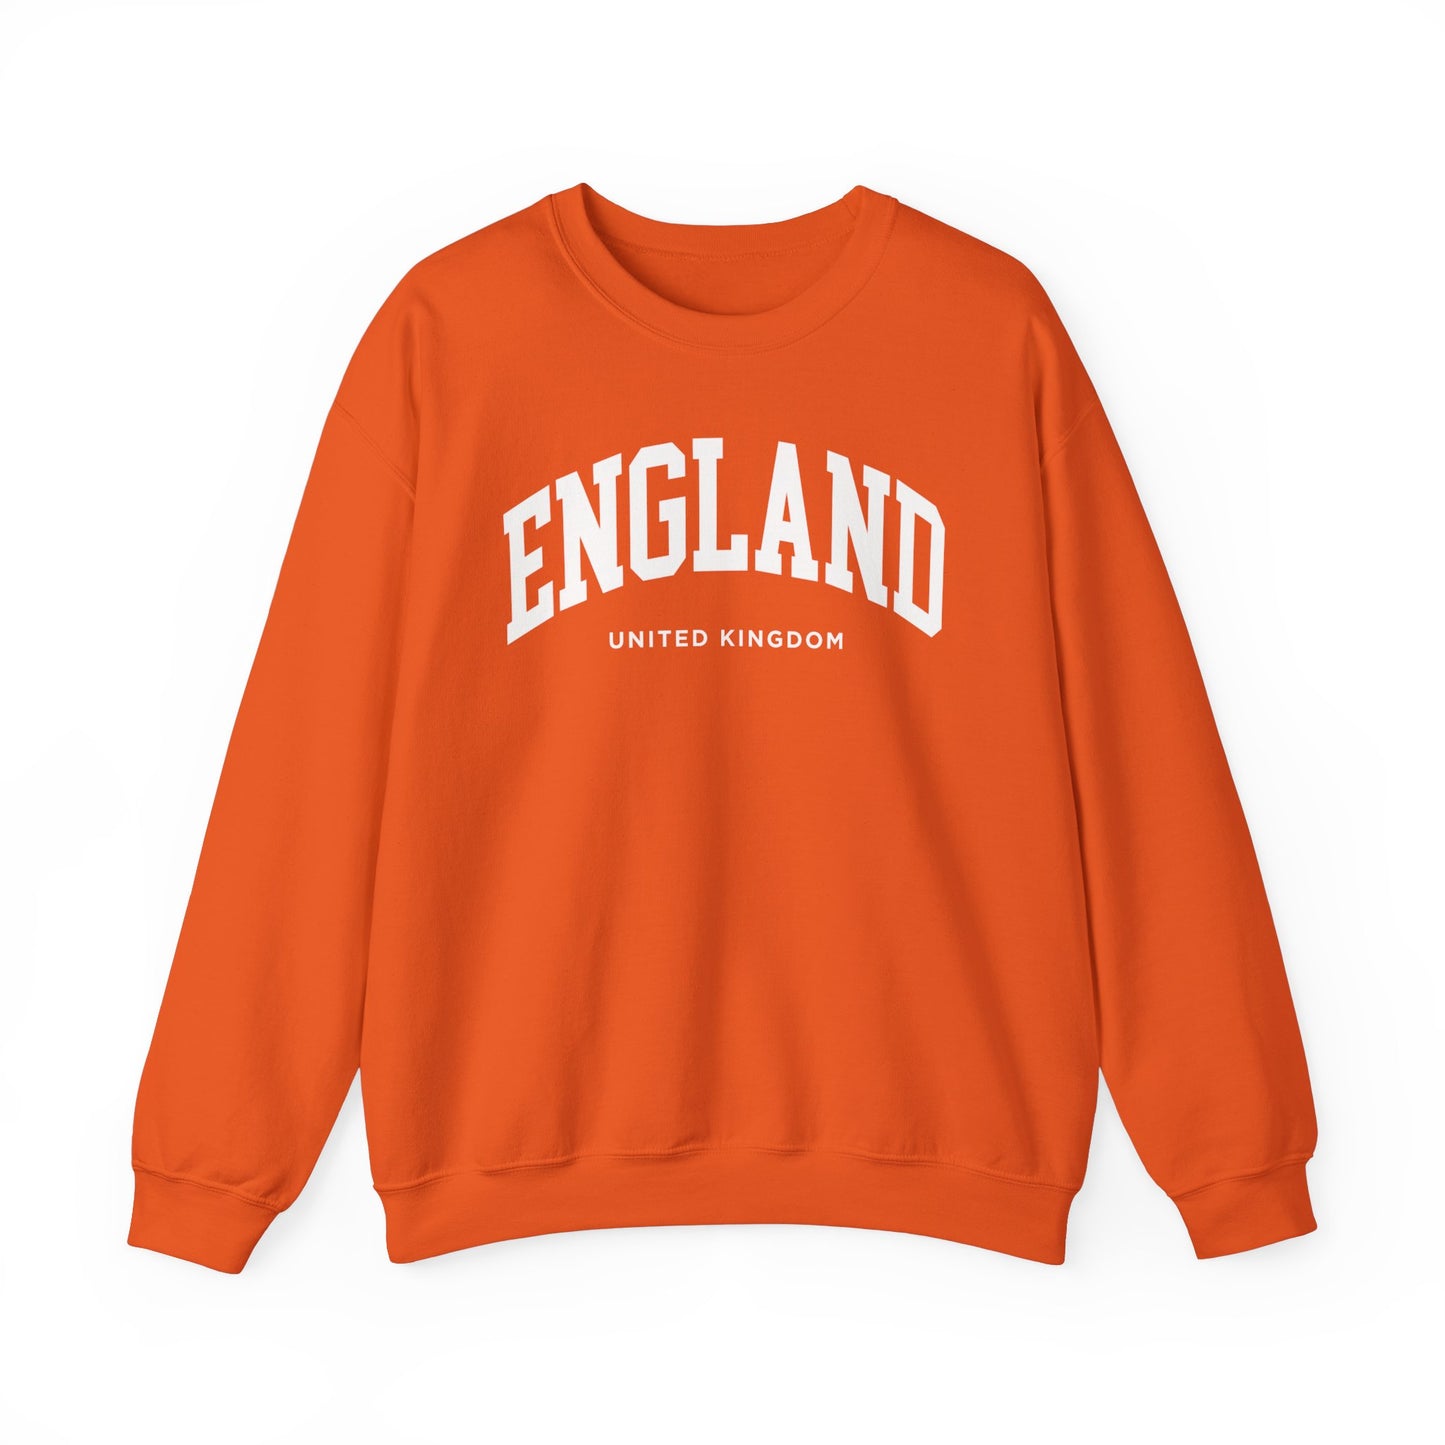 England Sweatshirt